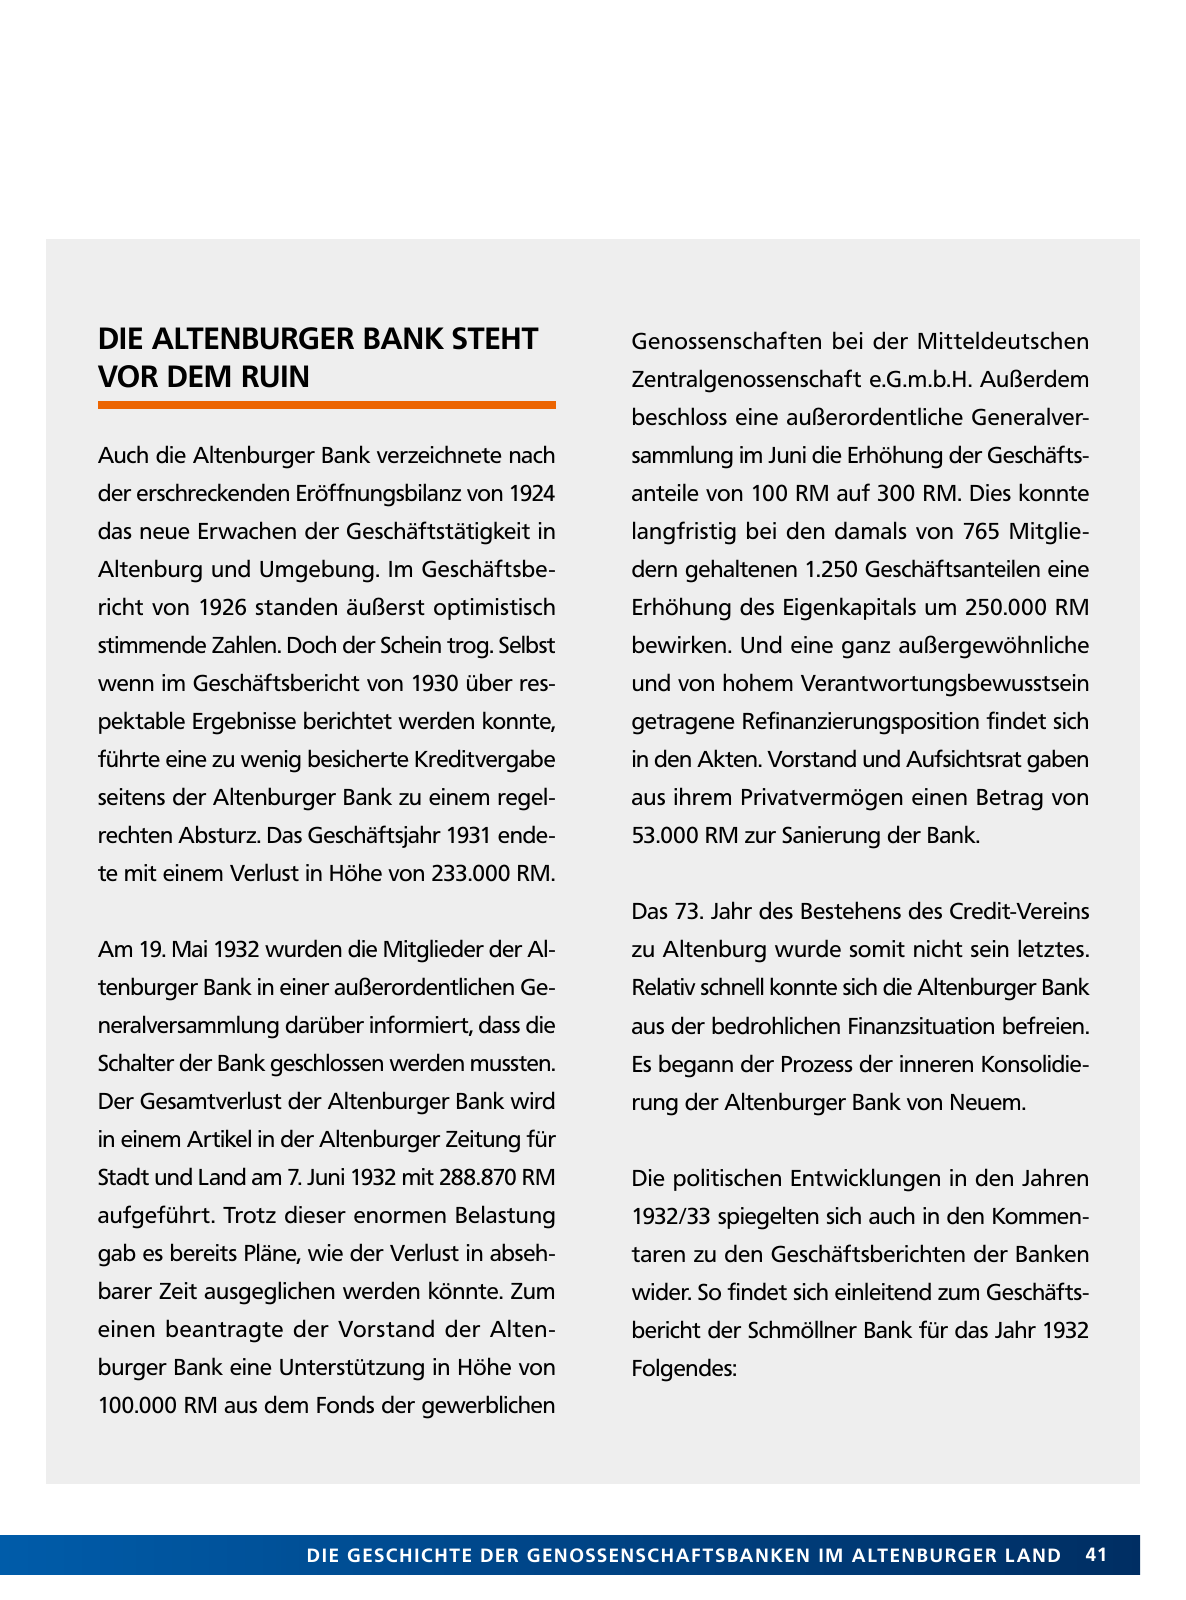 Vorschau Von der Idee, sich selbst zu helfen – 150 Jahre genossenschaftliches Bankwesen im Altenburger Land Seite 41